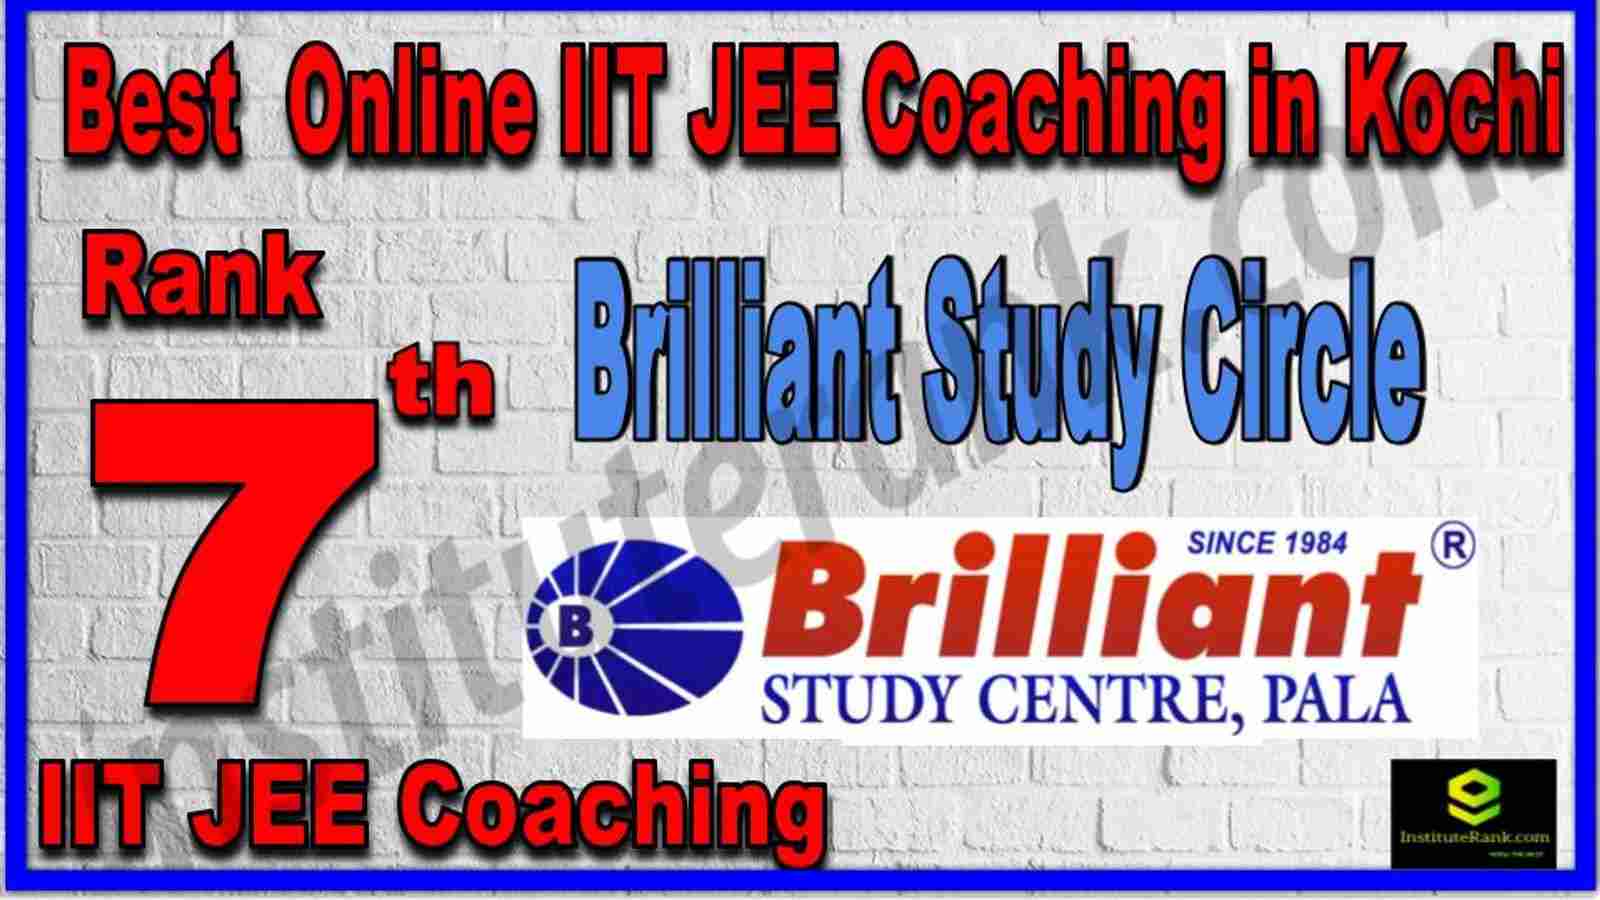 Rank 7th Best Online IIT JEE Coaching in Kochi